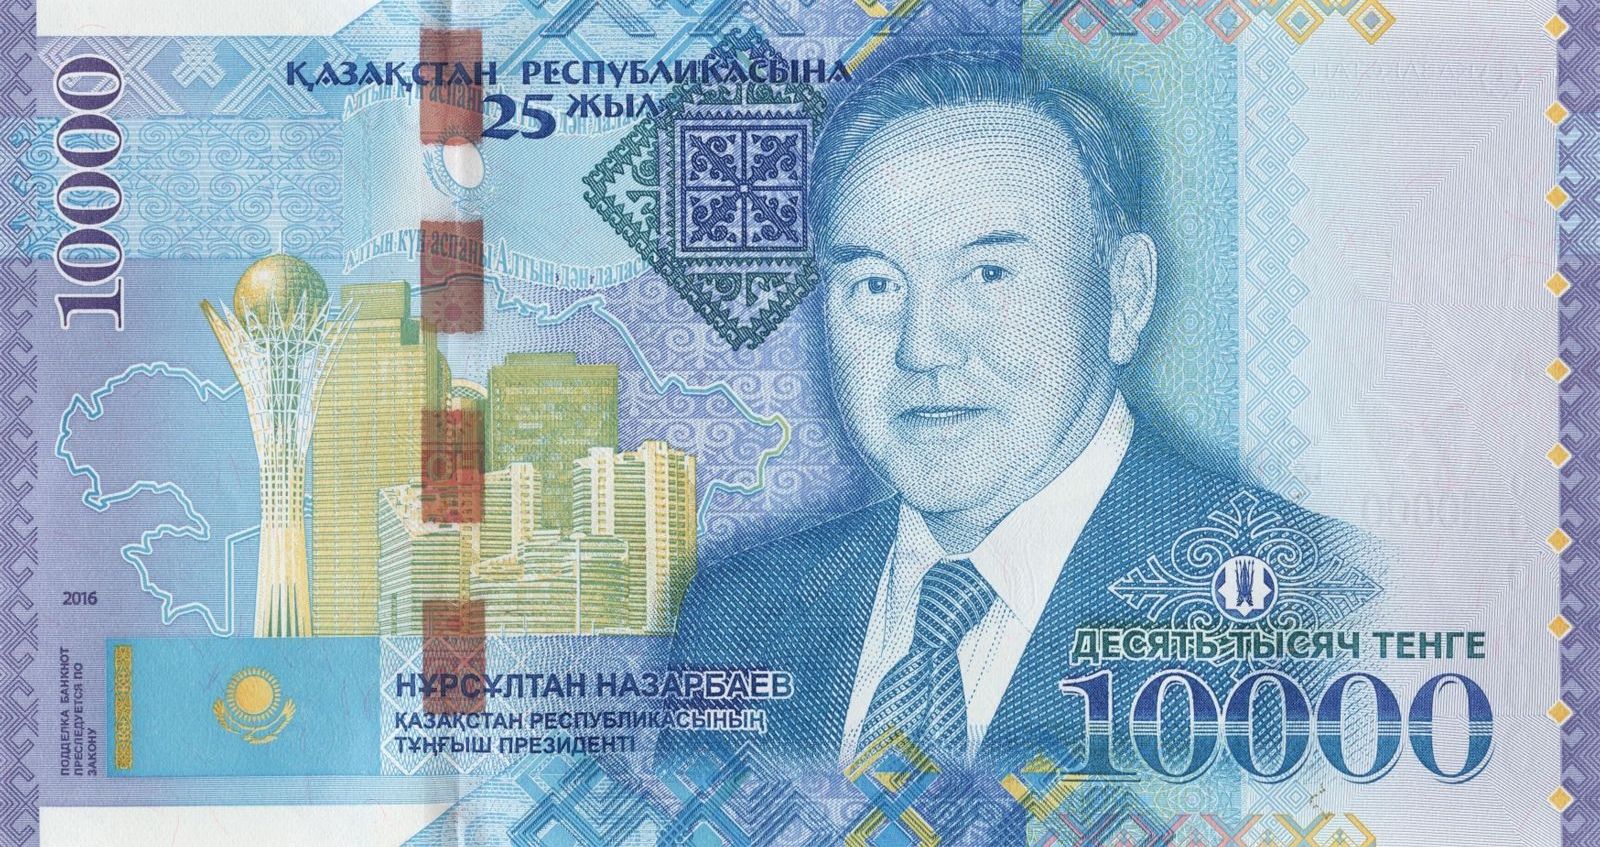 Юбилейная банкнота номиналом 10 000 тенге, посвященная 25-летию Независимости Республики Казахстан